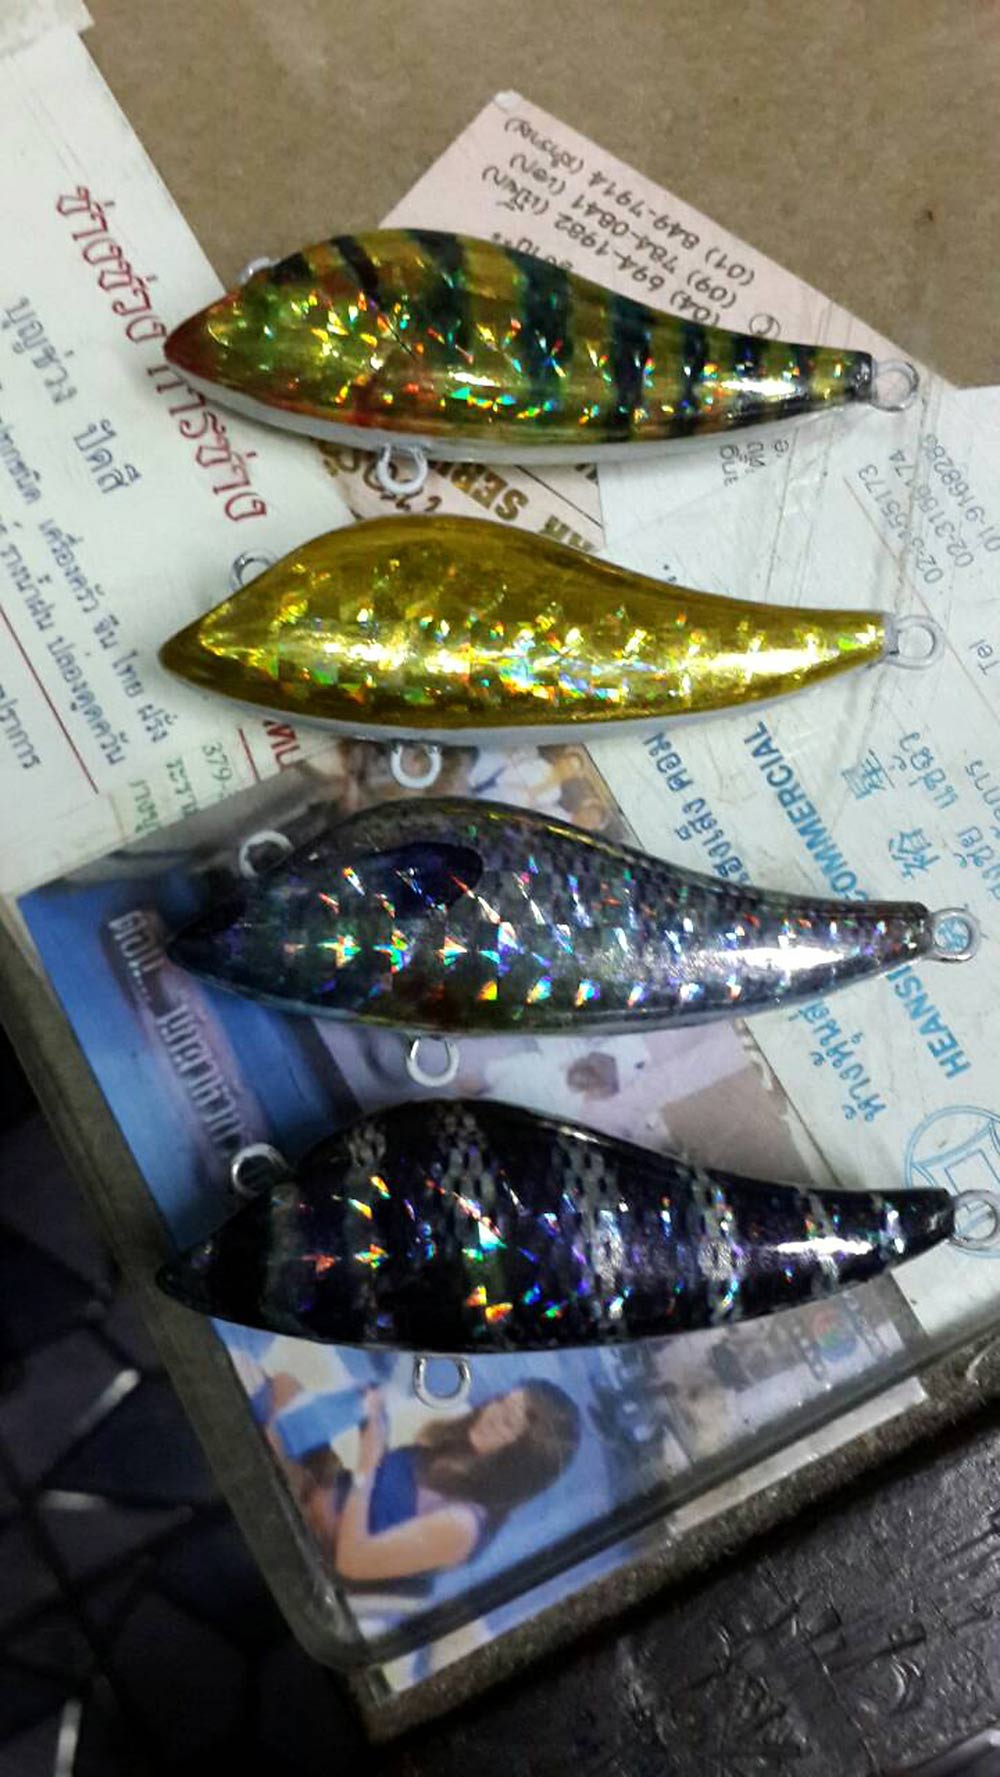 @>-> New MoDel ปลากราย 75 ตัวใหม่ทำไว้ออกล่า กระสูบ กับ กะพง  <-<@